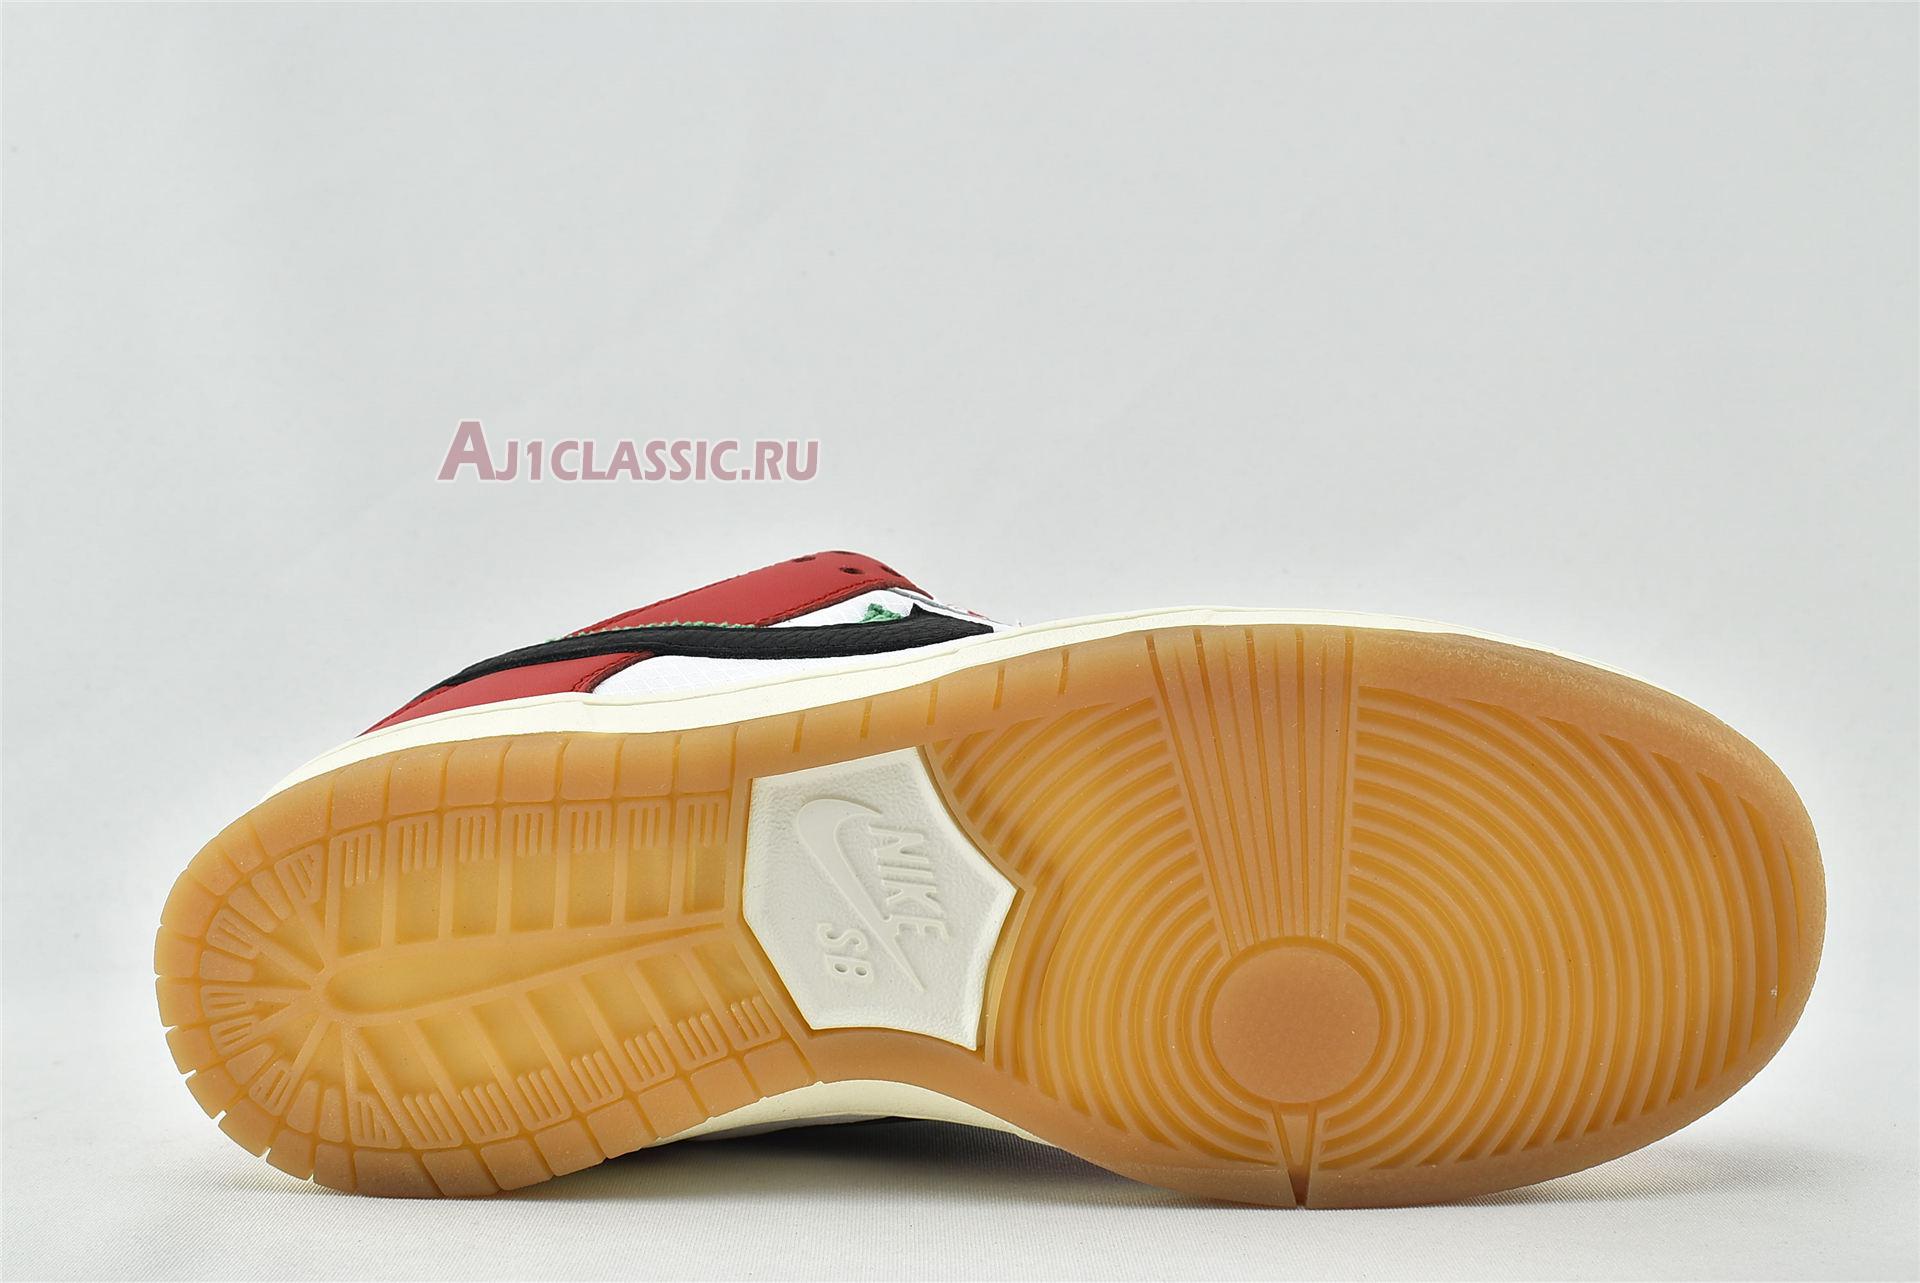 Frame Skate x Nike Dunk Low SB "Habibi" CT2550-600